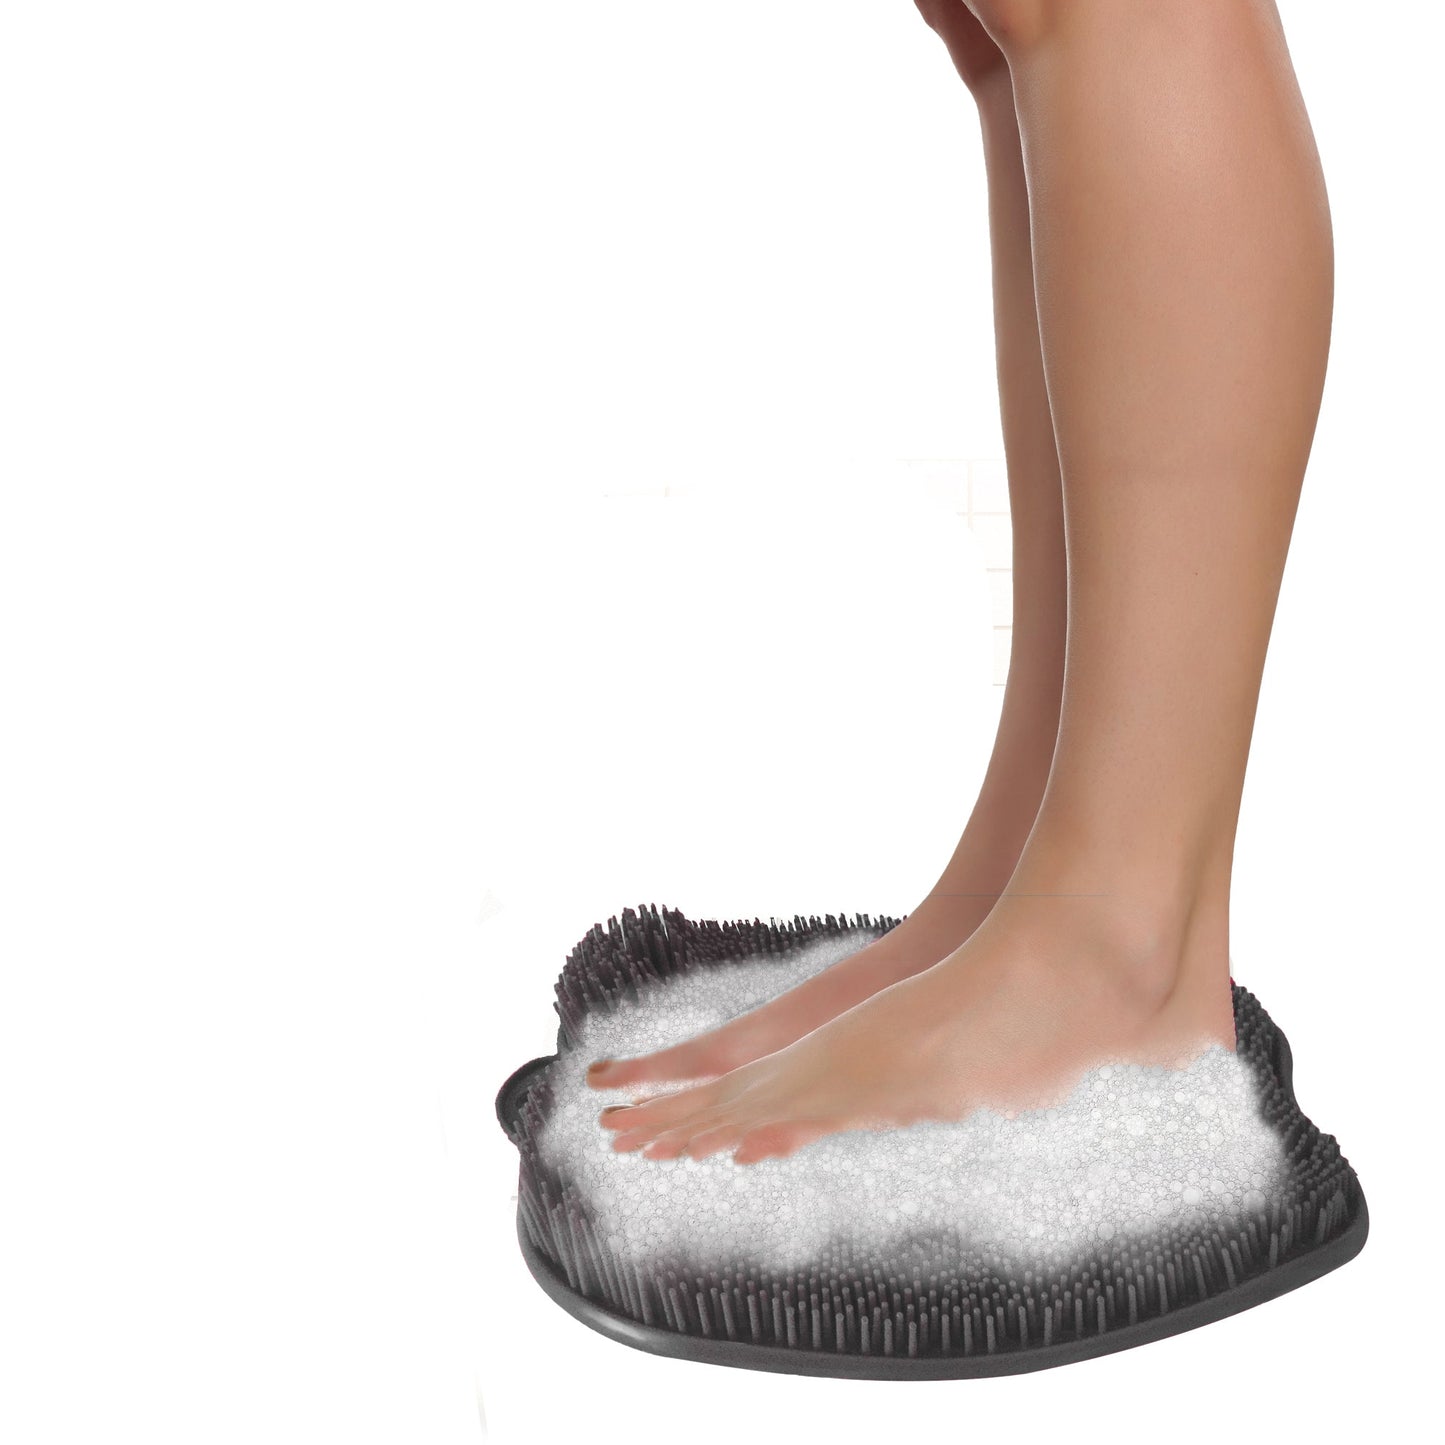 RejuviFoam - Douche voet massager scrubber & reiniger